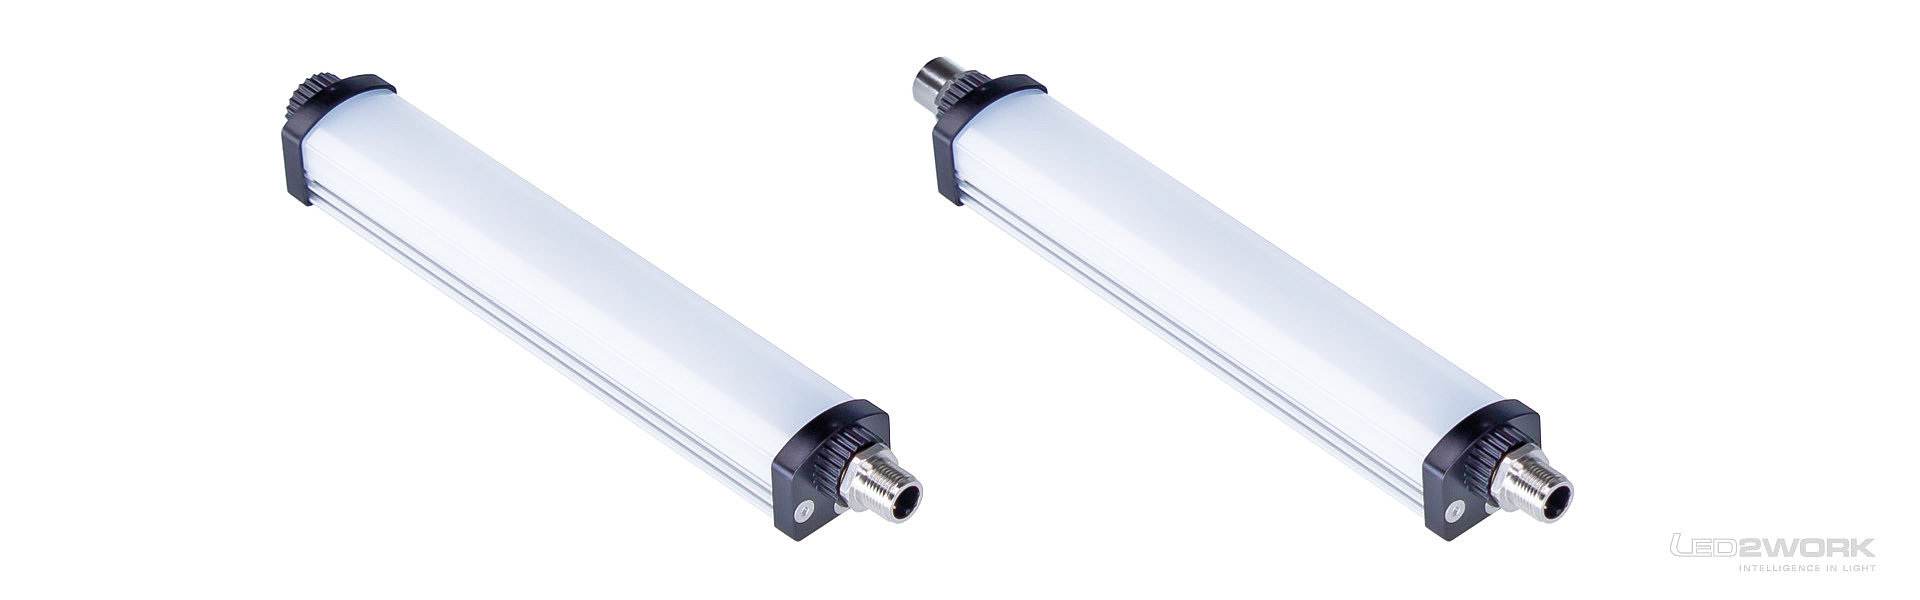 Deslizador | Luminaria LED para máquinas | Luminaria LED de superficie | Luminaria LED para postes | LEANLED II | próximamente | LED2WORK